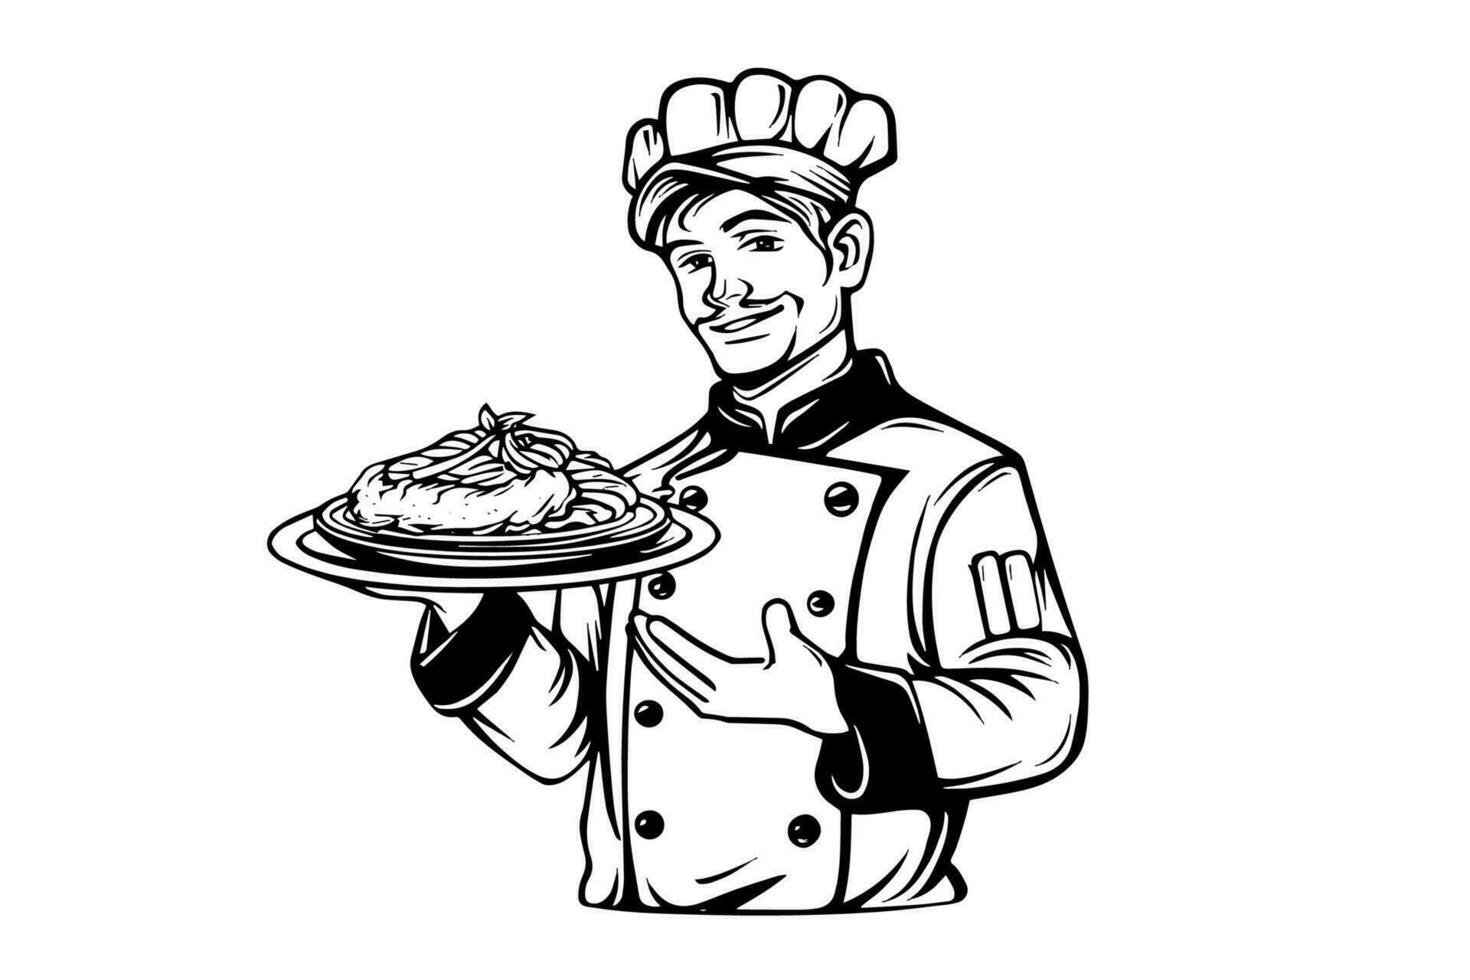 chef in een hoed met pasta logotype gravure stijl vector illustratie.